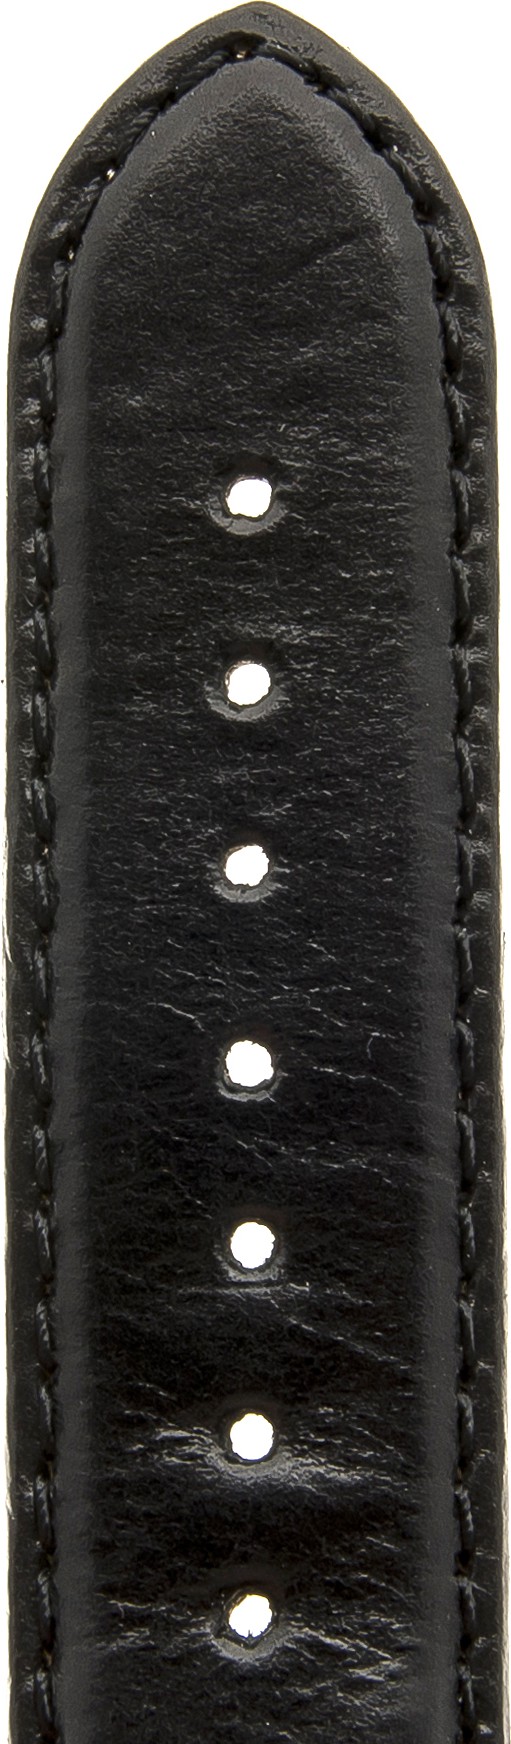   Uhrenarmband Carasut 666 Dornschließe - Leder, glatt - schwarz 